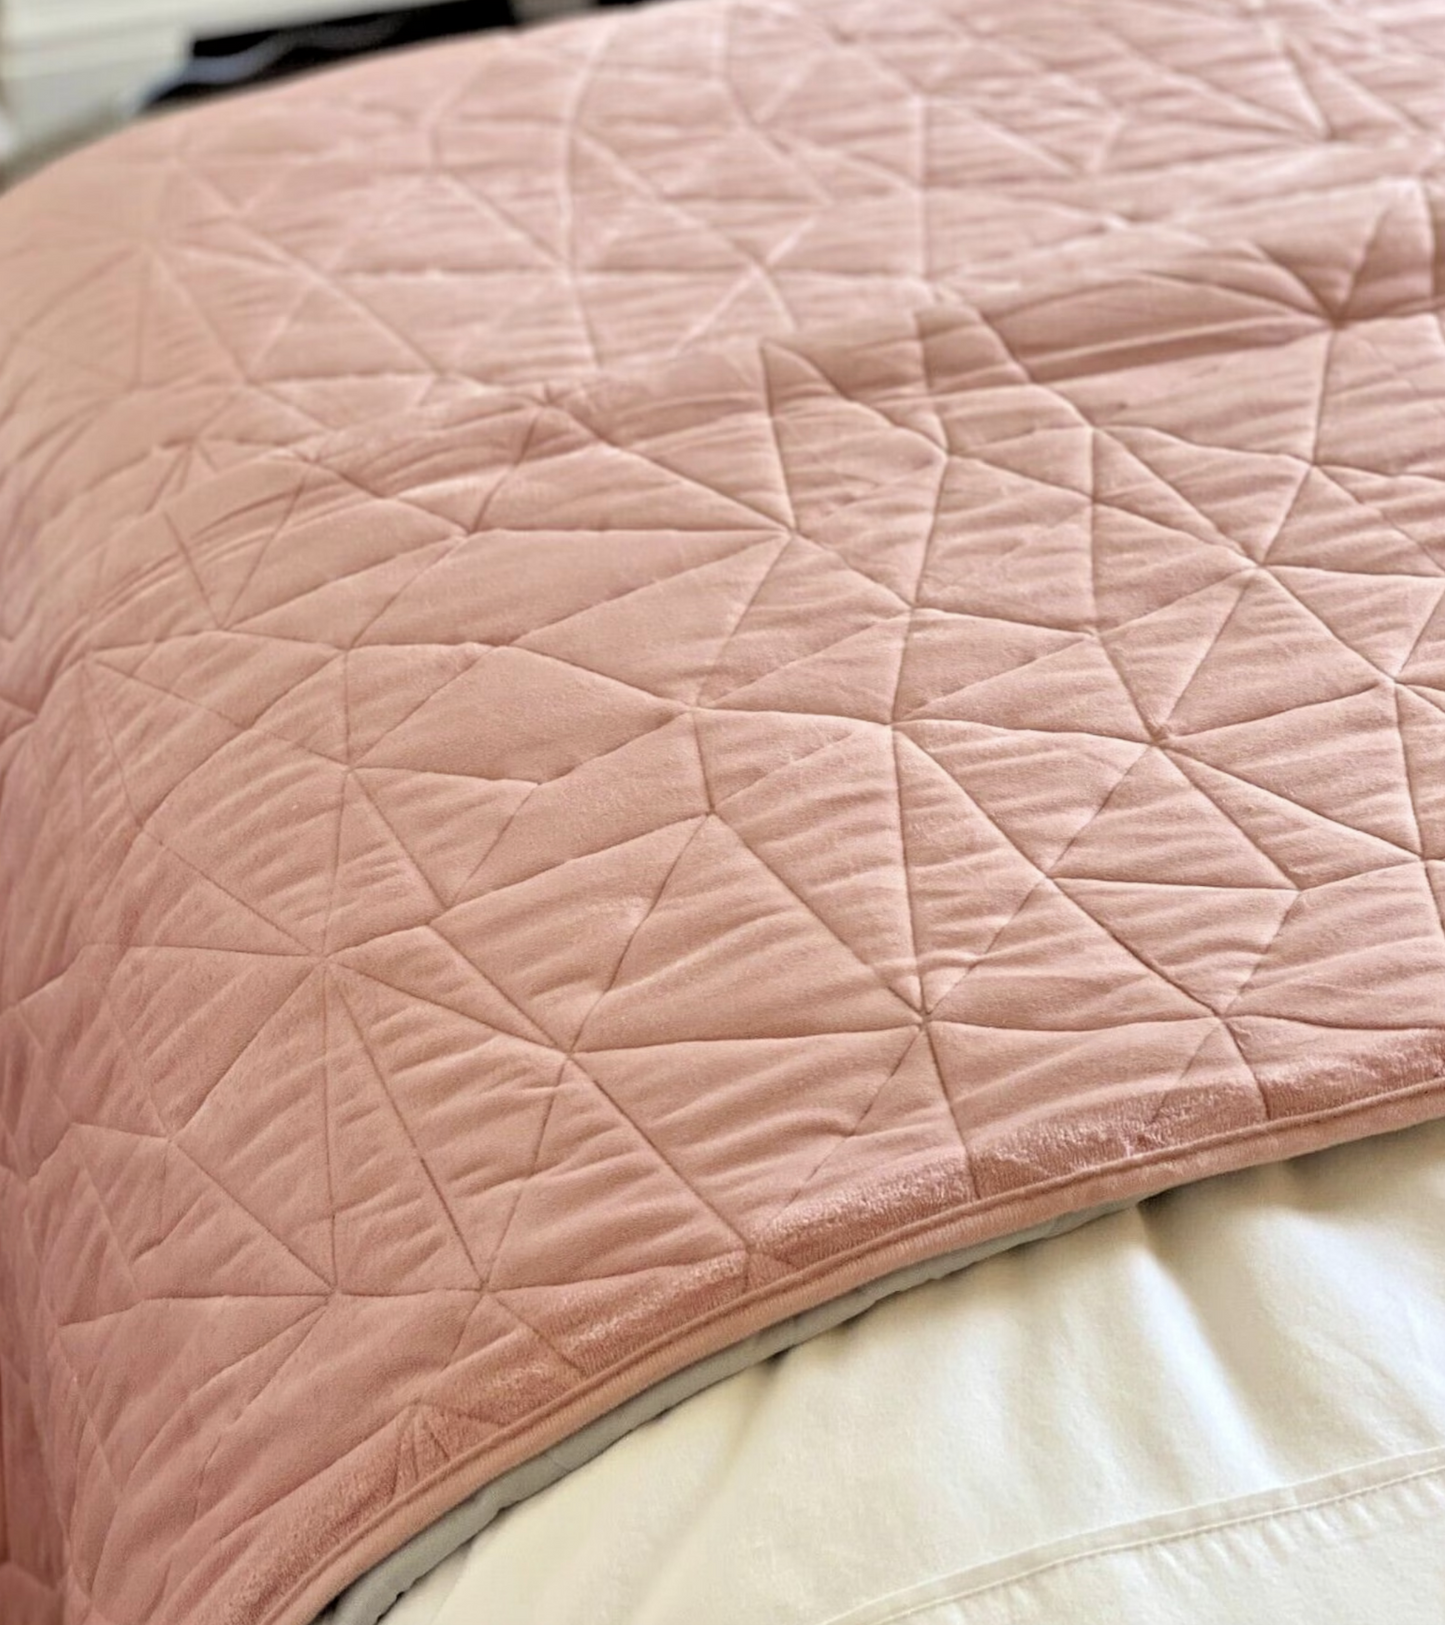 Vermont Velvet Bedspread - Blush Pink